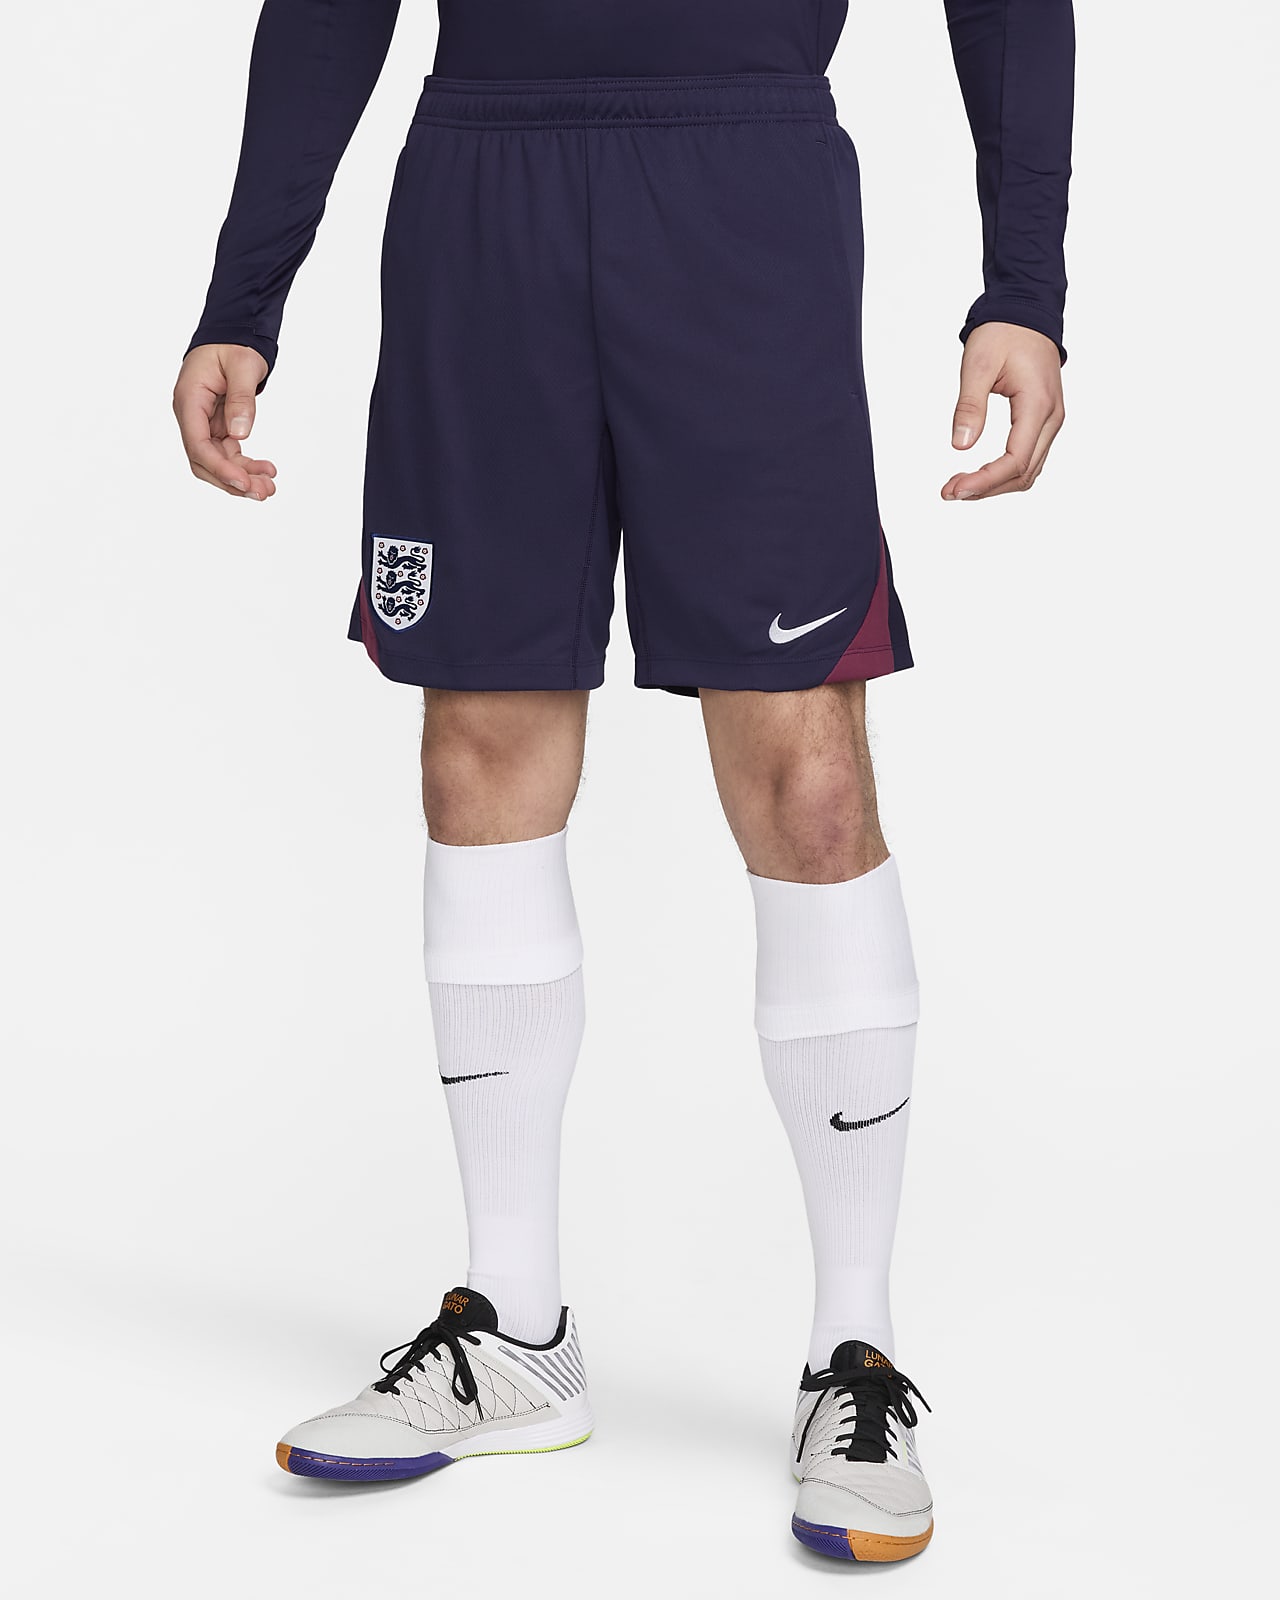 Engeland Strike Nike Dri-FIT knit voetbalshorts voor heren